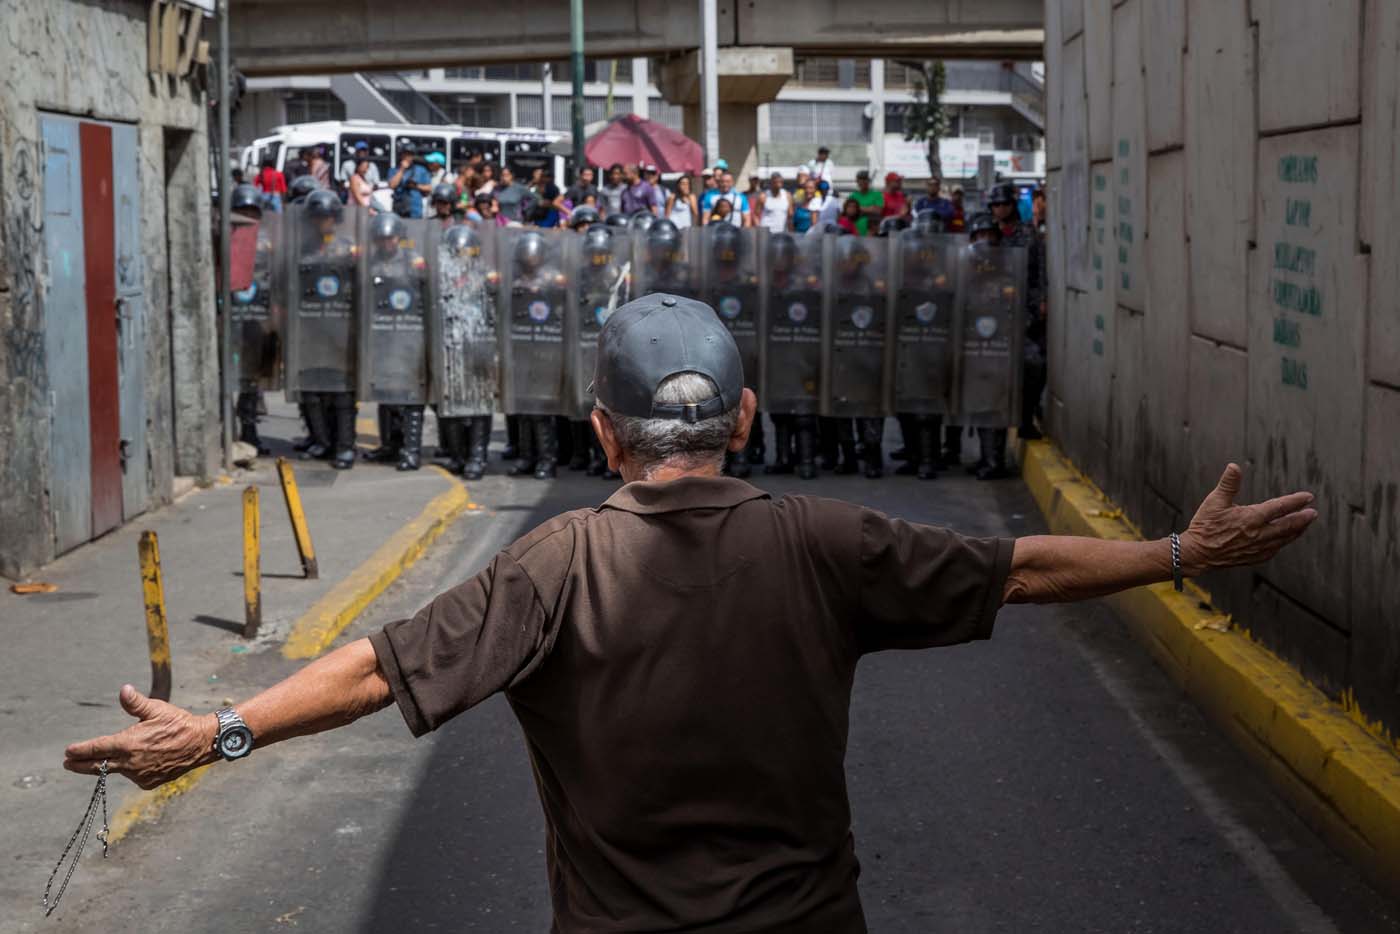 “Estamos protestando por todo”: Continúan las manifestaciones en Venezuela (fotos)